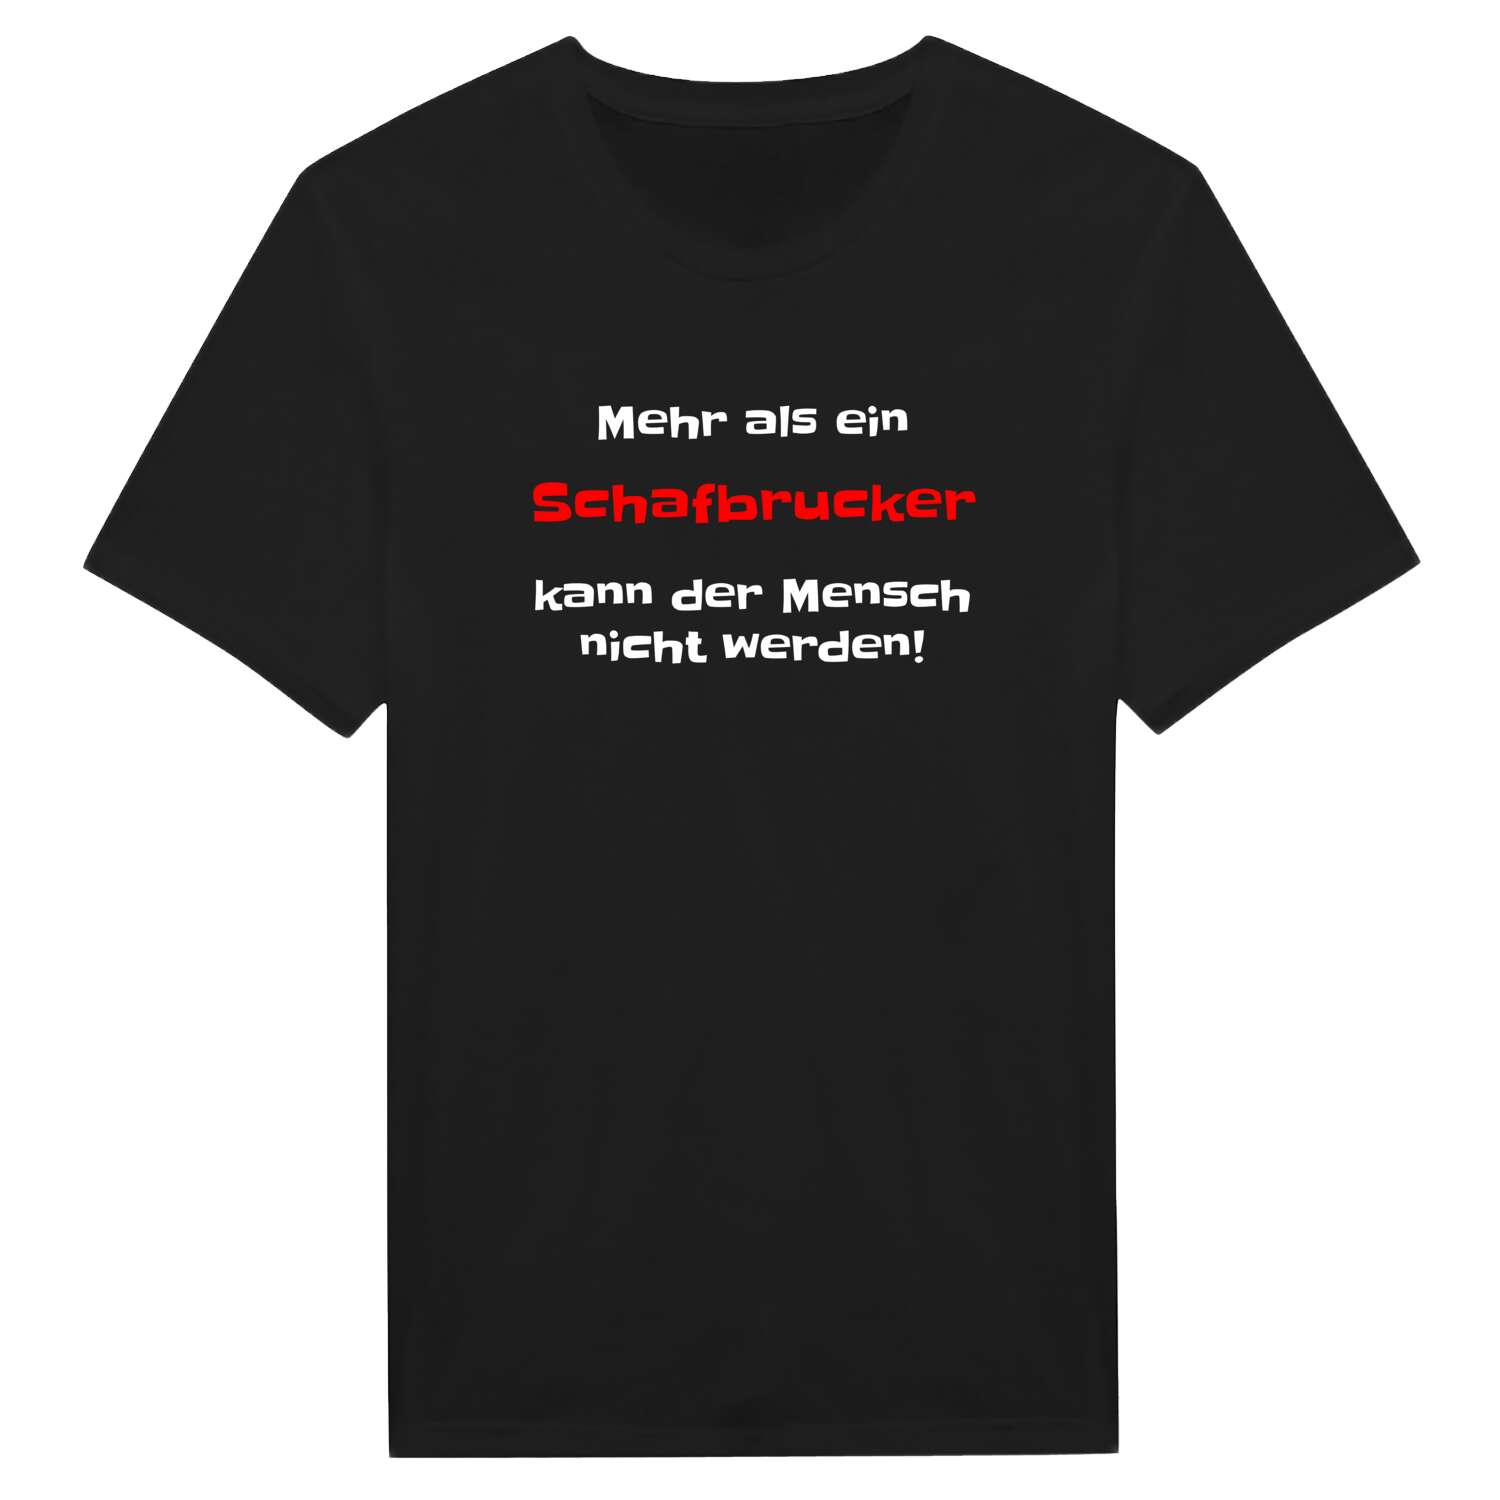 Schafbruck T-Shirt »Mehr als ein«